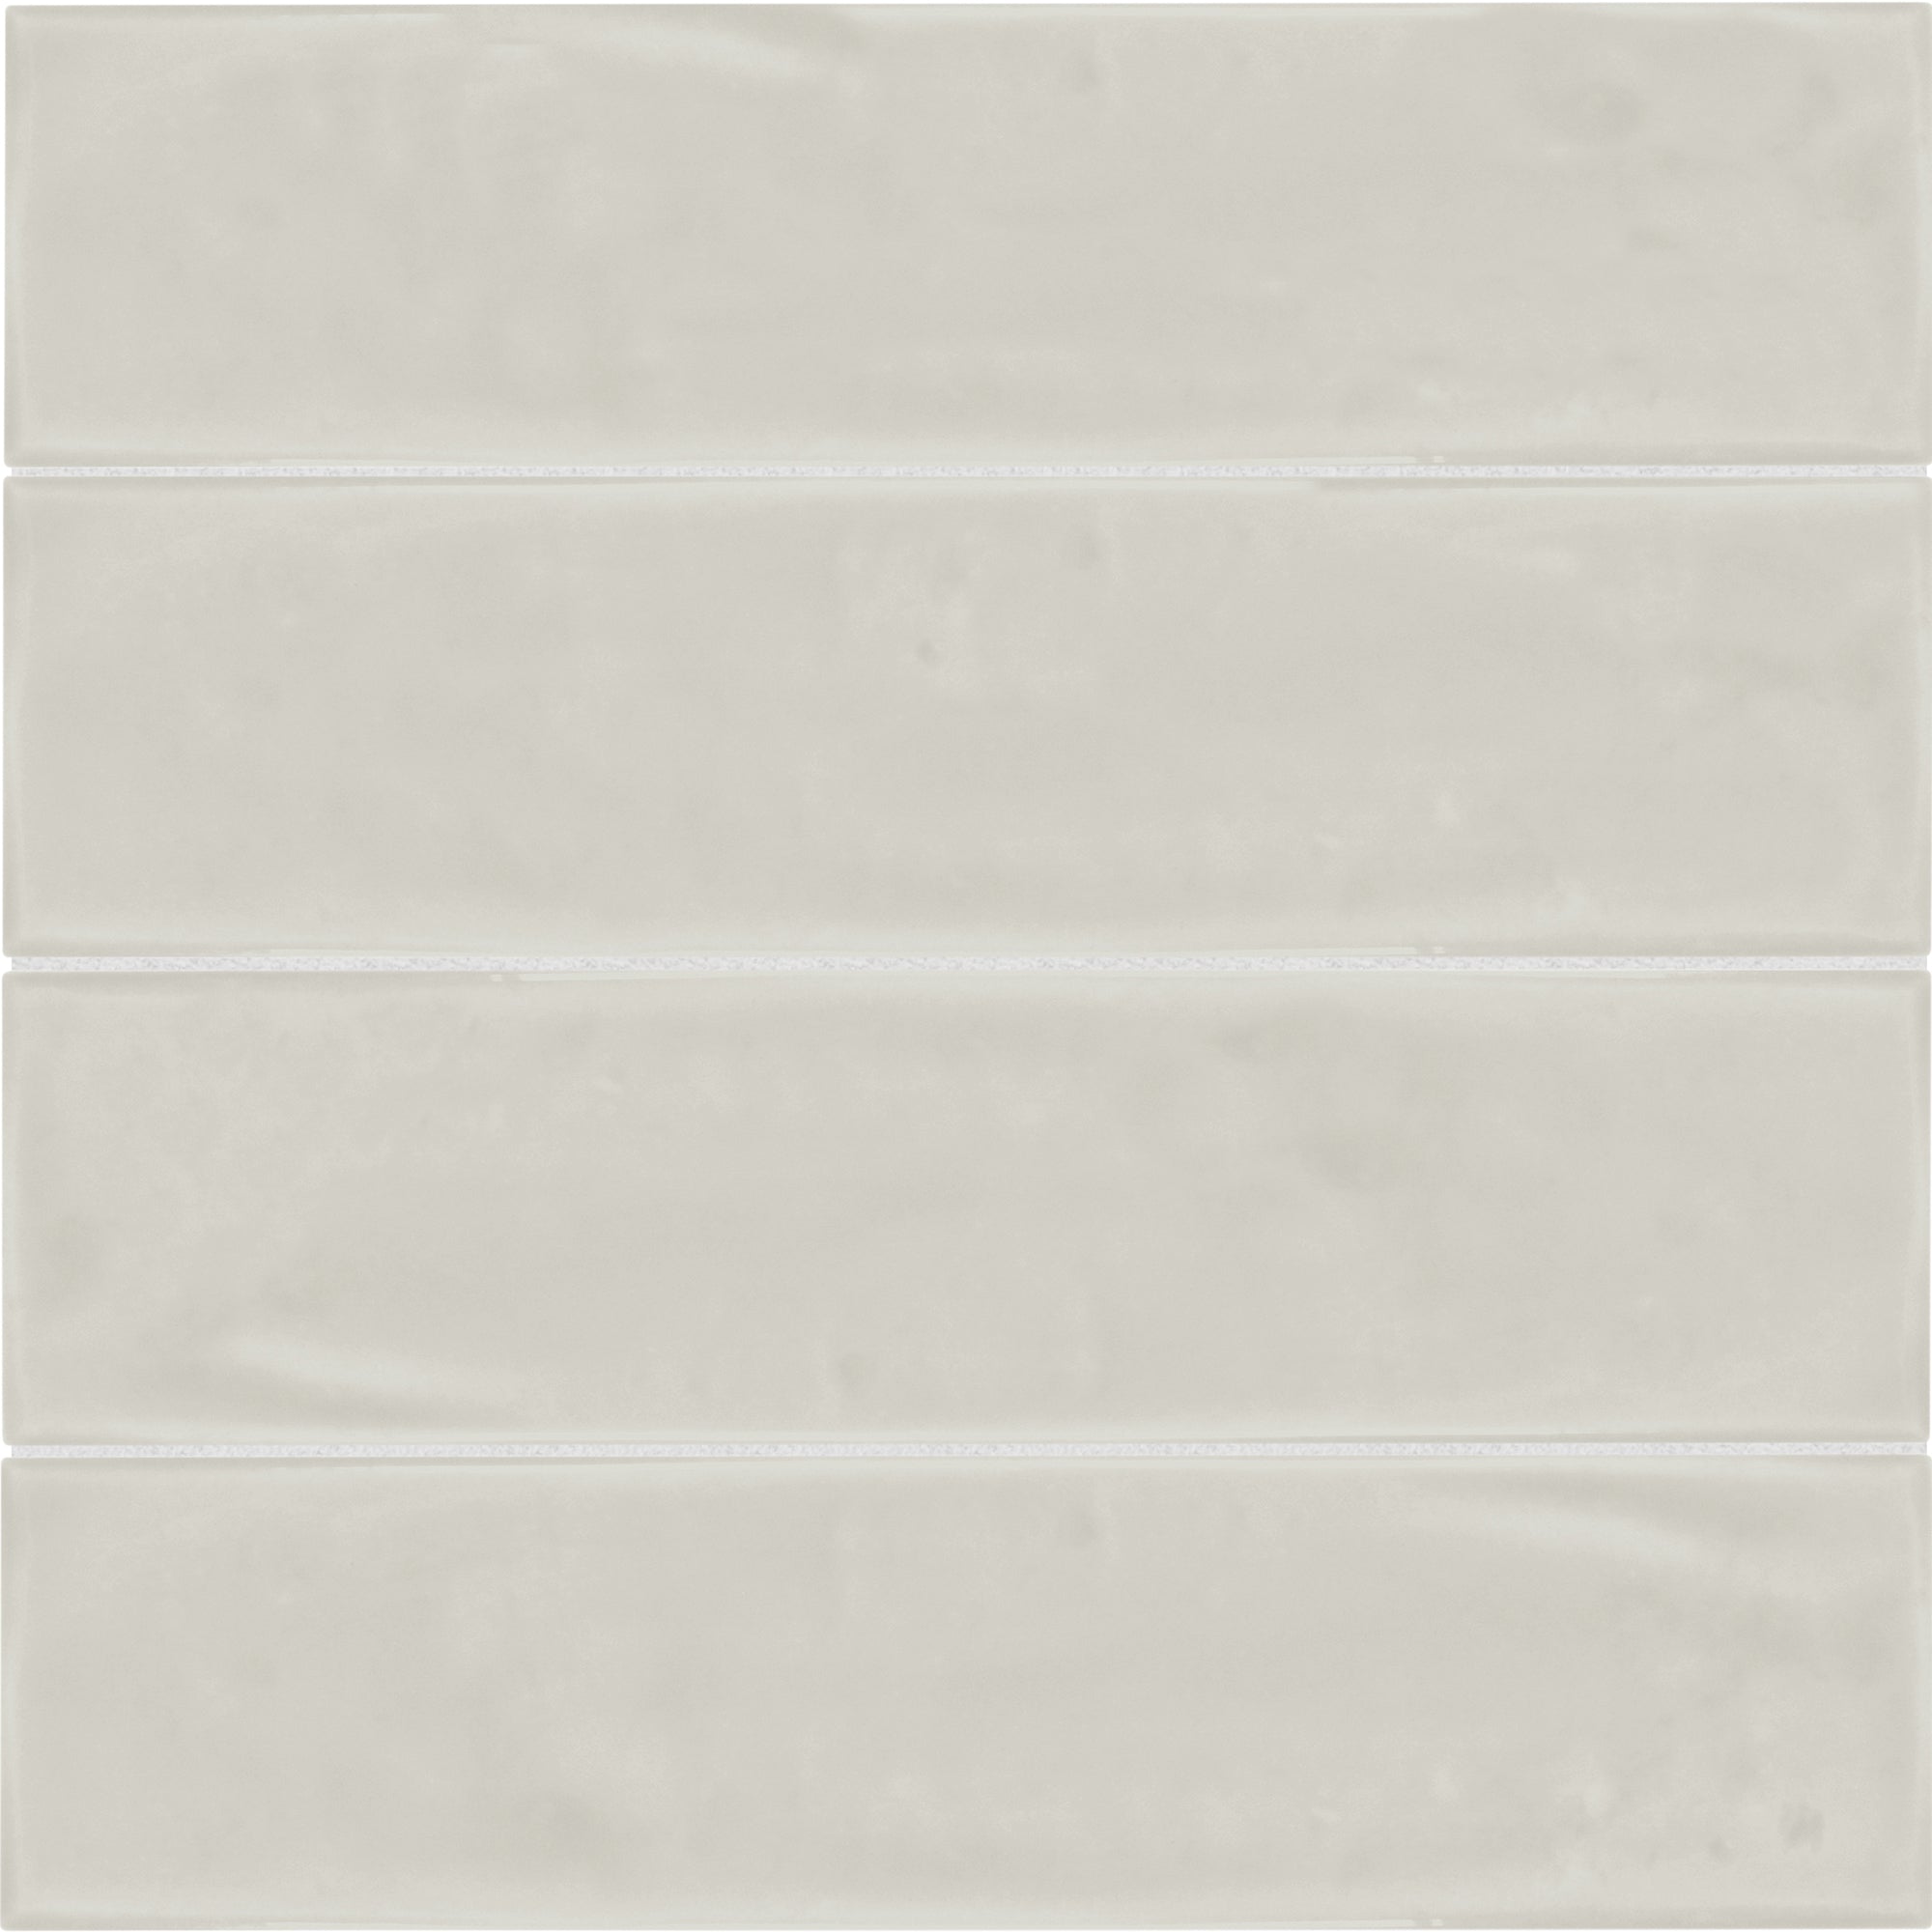 Anatolia - Marlow 3 in. x 12 in. Glazed Ceramic Tile - Desert Glossy